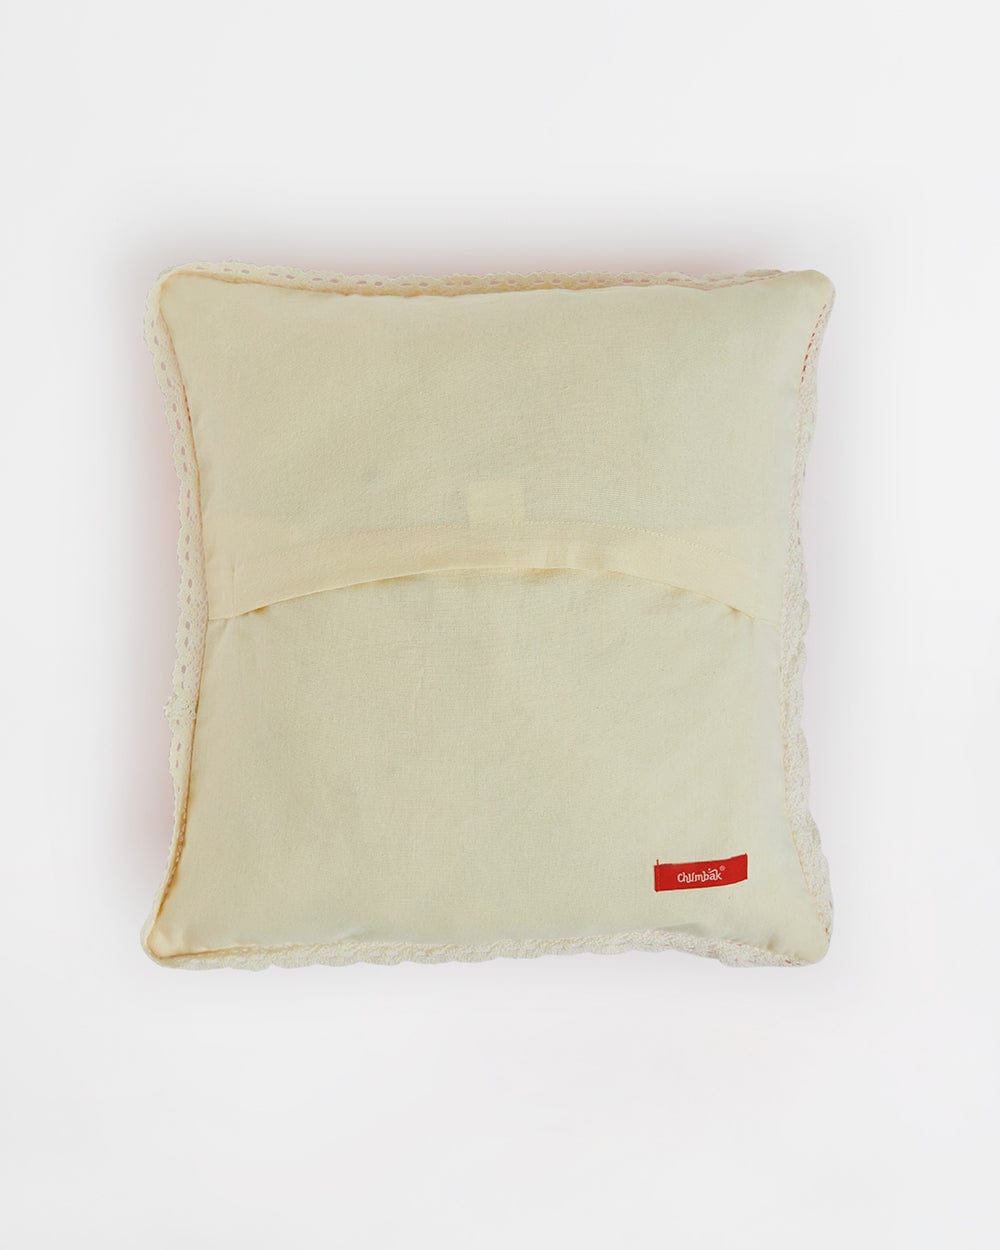 Chumbak Woodland Wonders 16" Cushion Covers Set